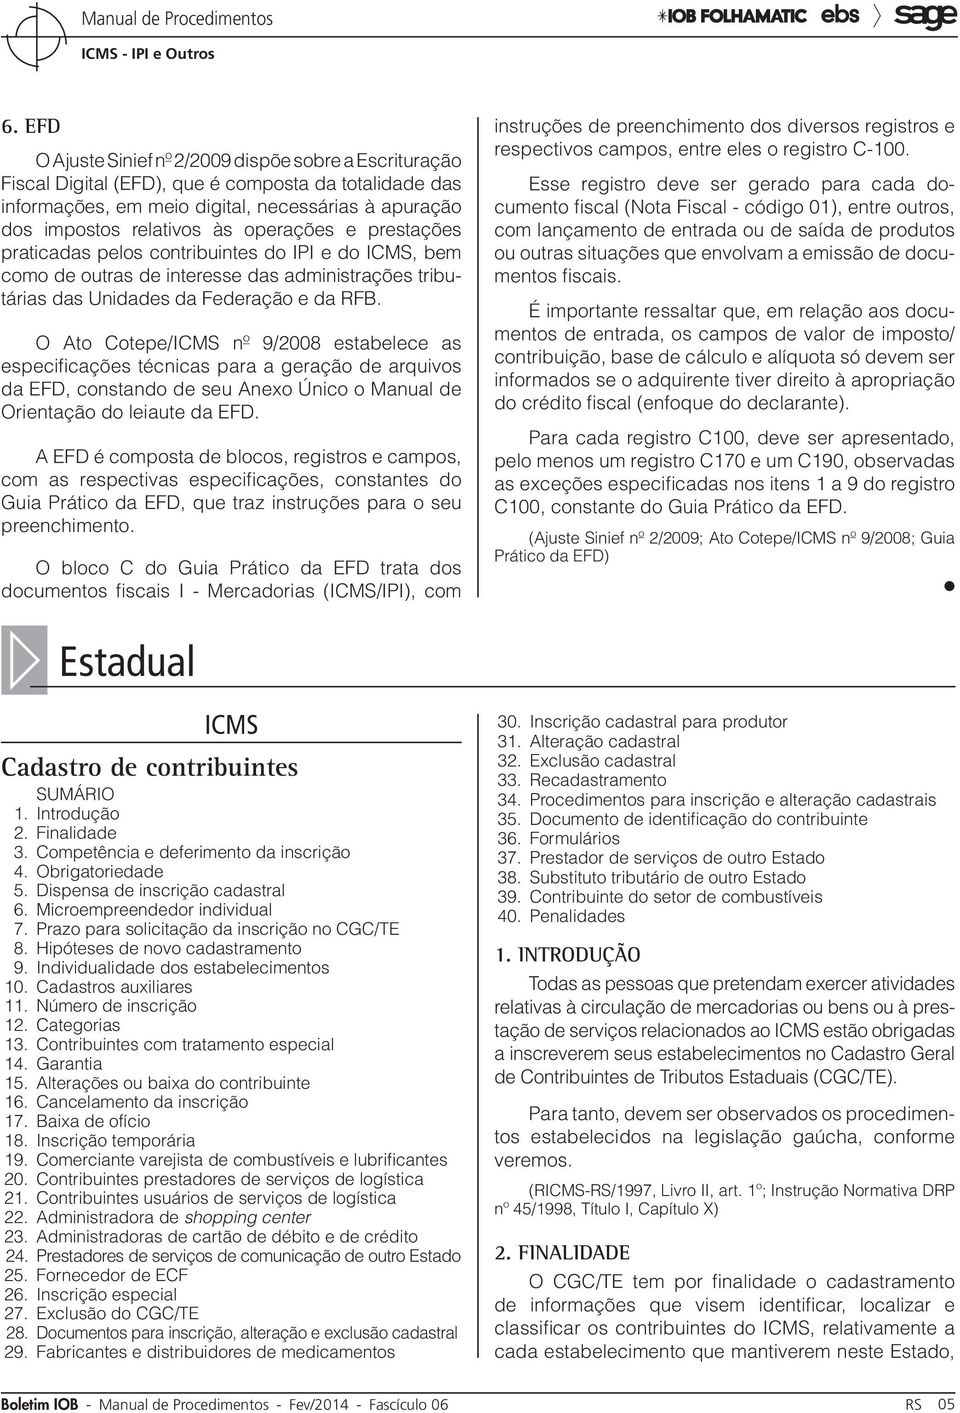 O Ato Cotepe/ICMS nº 9/2008 estabelece as especificações técnicas para a geração de arquivos da EFD, constando de seu Anexo Único o Manual de Orientação do leiaute da EFD.